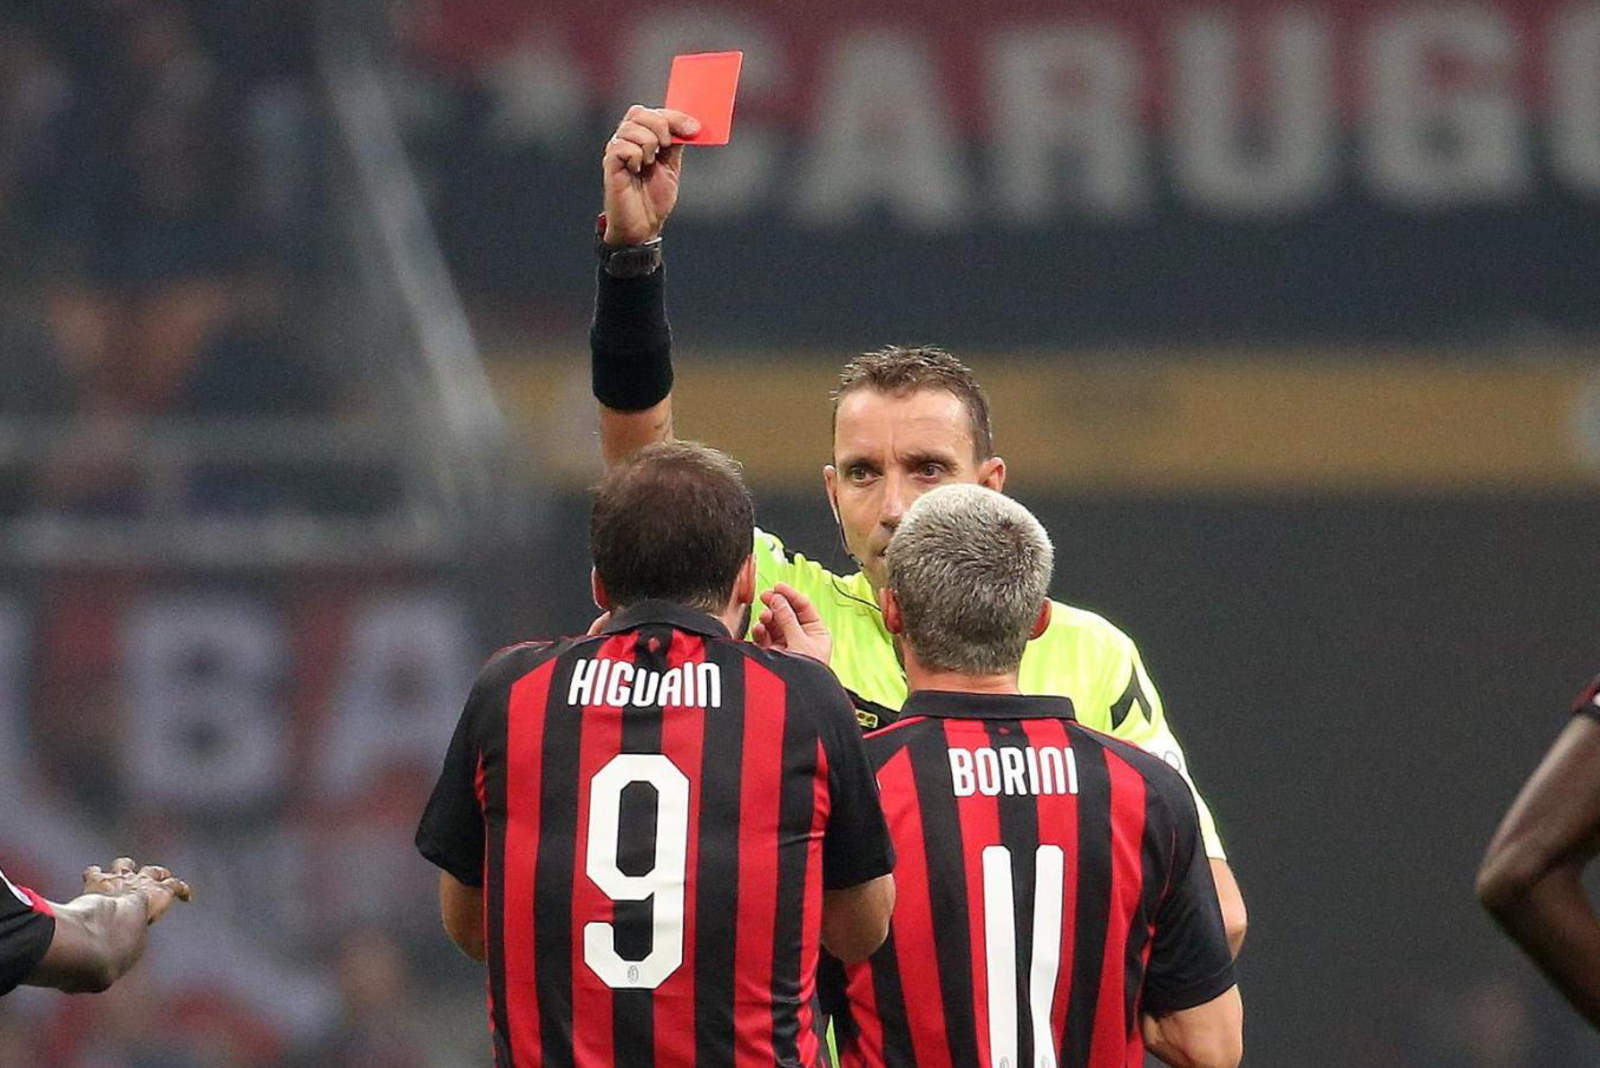 El delantero argentino vio la tarjeta roja en el minuto 38 del segundo tiempo donde su equipo, AC Milán, cayó ante Juventus.